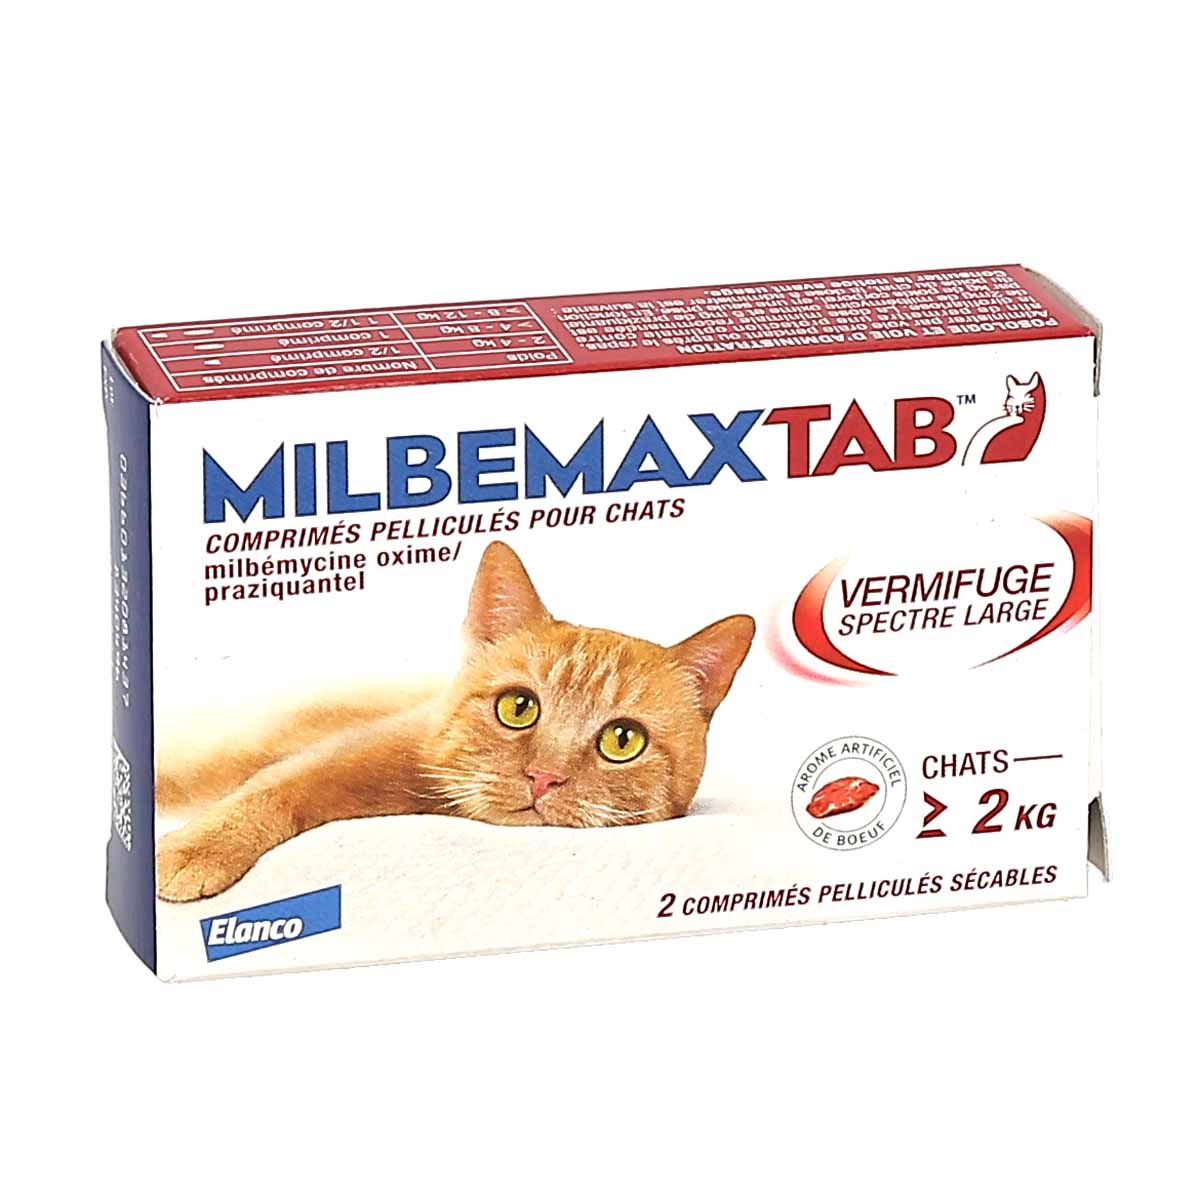 MilbemaxTab™ Vermifuges Pour Chiens et Chats